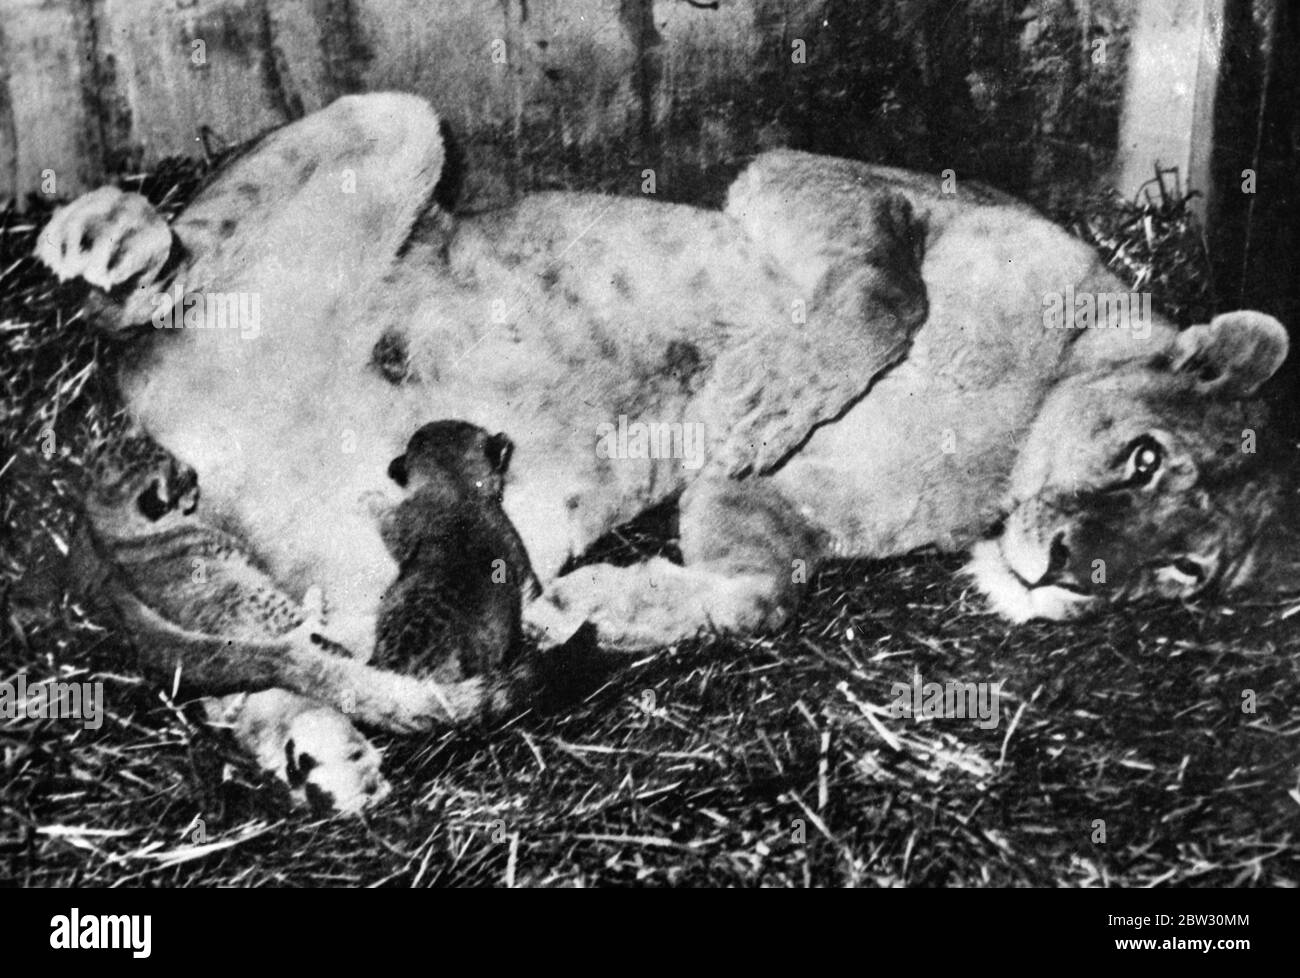 La leonessa gioca con i suoi giovani allo zoo di Vienna . Lo zoo di Vienna , ha appena avuto un'interessante aggiunta di due cuccioli di leone , il primo per molti anni . La leonessa in gioco con i suoi cuccioli allo Zoo di Vienna . 17 marzo 1932 Foto Stock